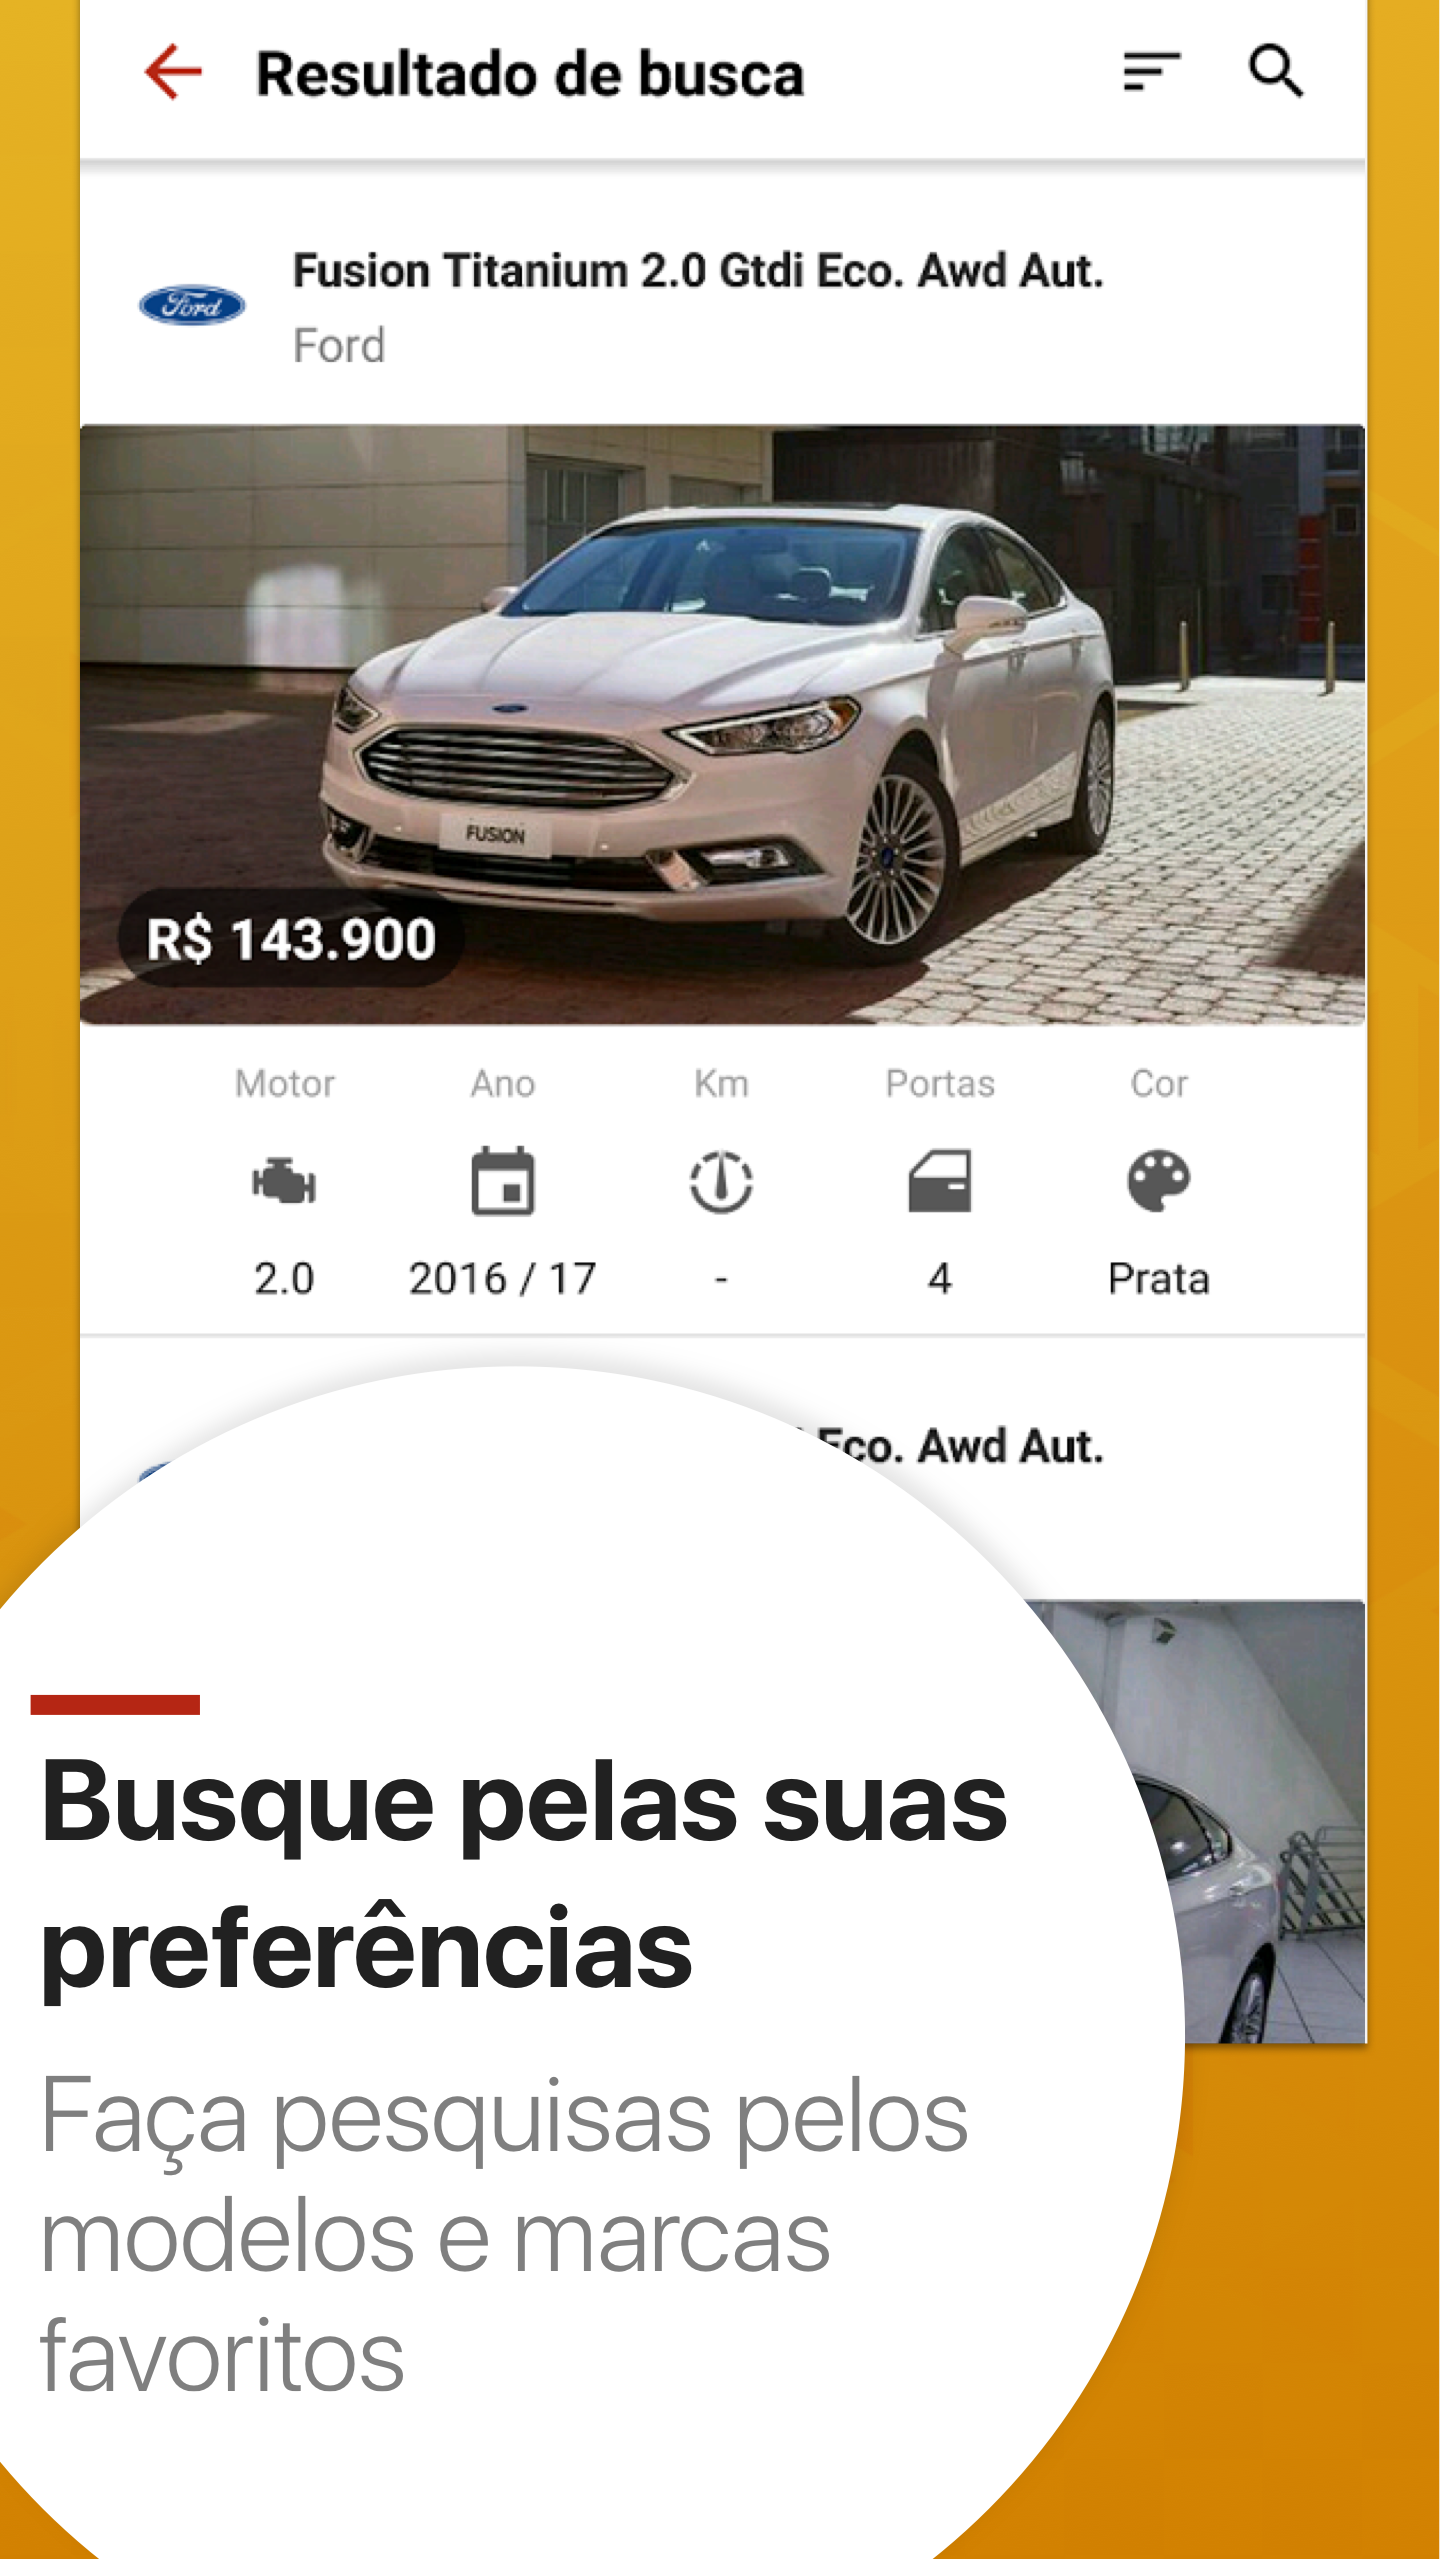 Android application Vrum - Classificados de Carros e Veículos screenshort